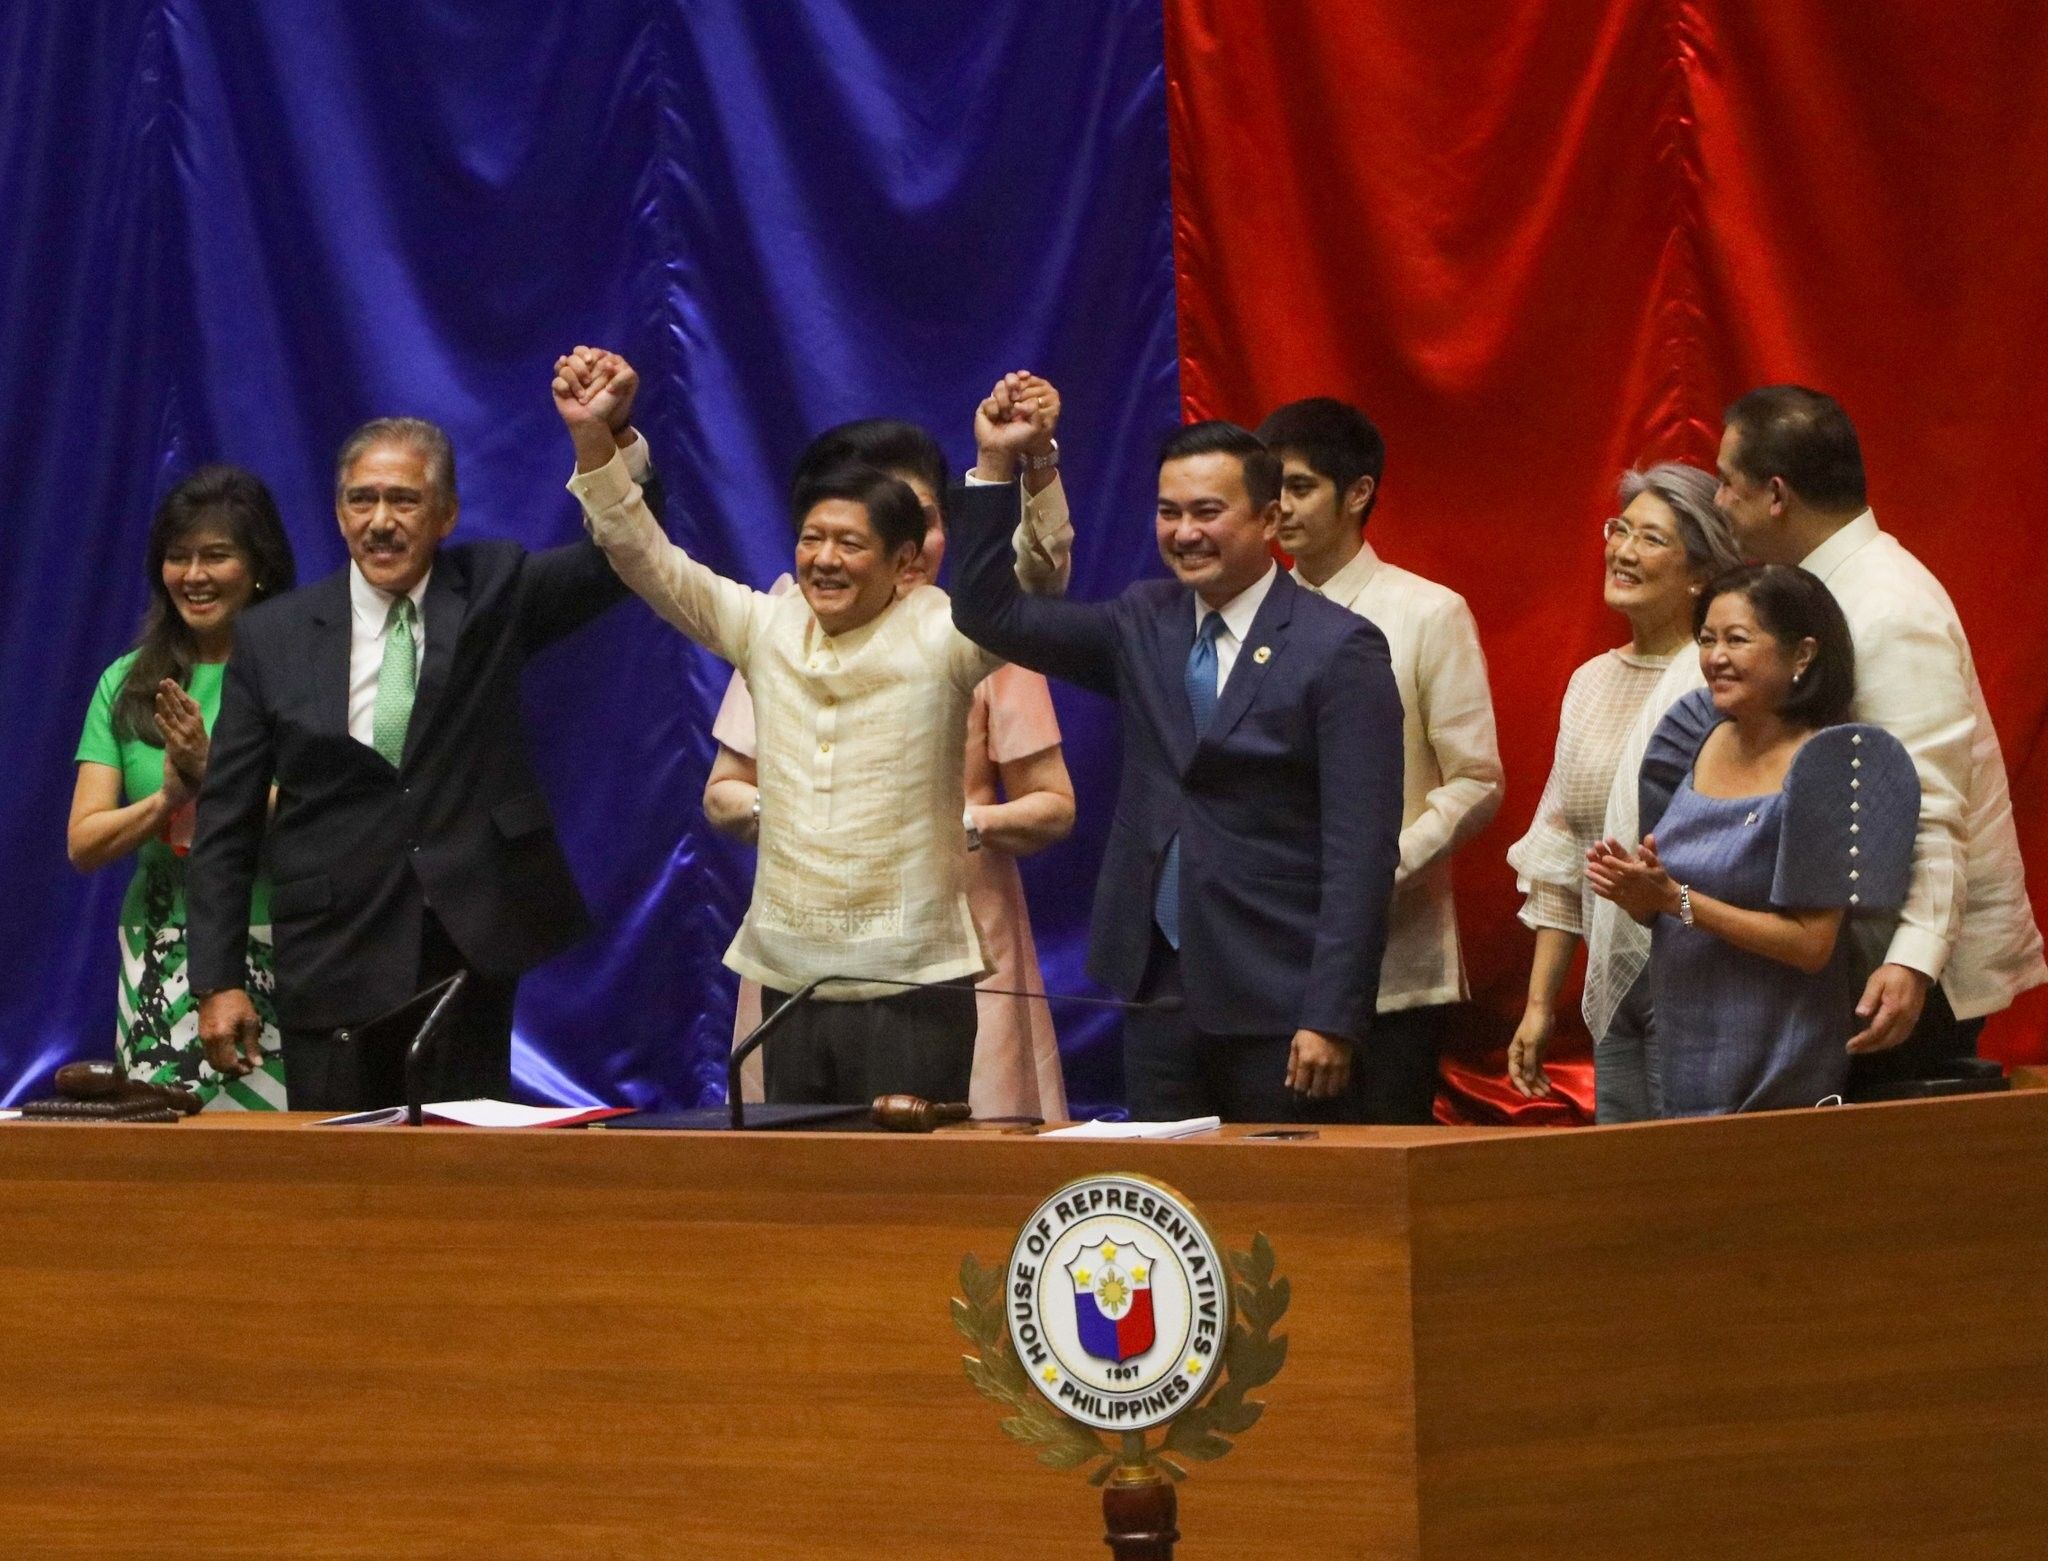 'Ika-2 chance ng pamilya?': Konggreso idineklara si Marcos bilang ika-17 pangulo ng Pilipinas